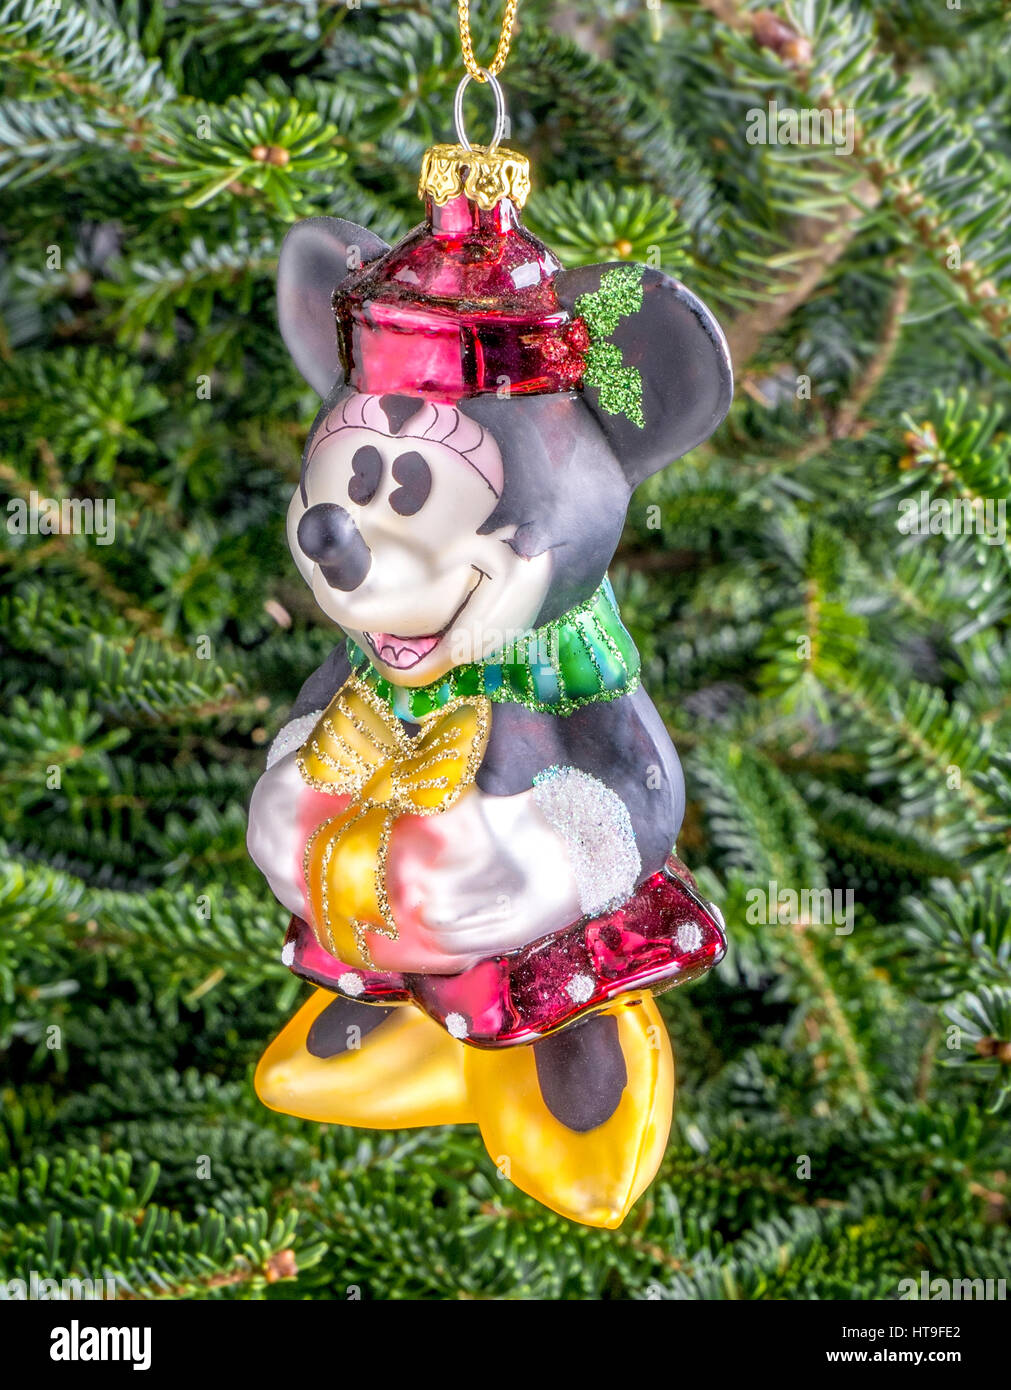 Boule de Noël accrochée à un arbre en forme de Minnie Mouse Banque D'Images